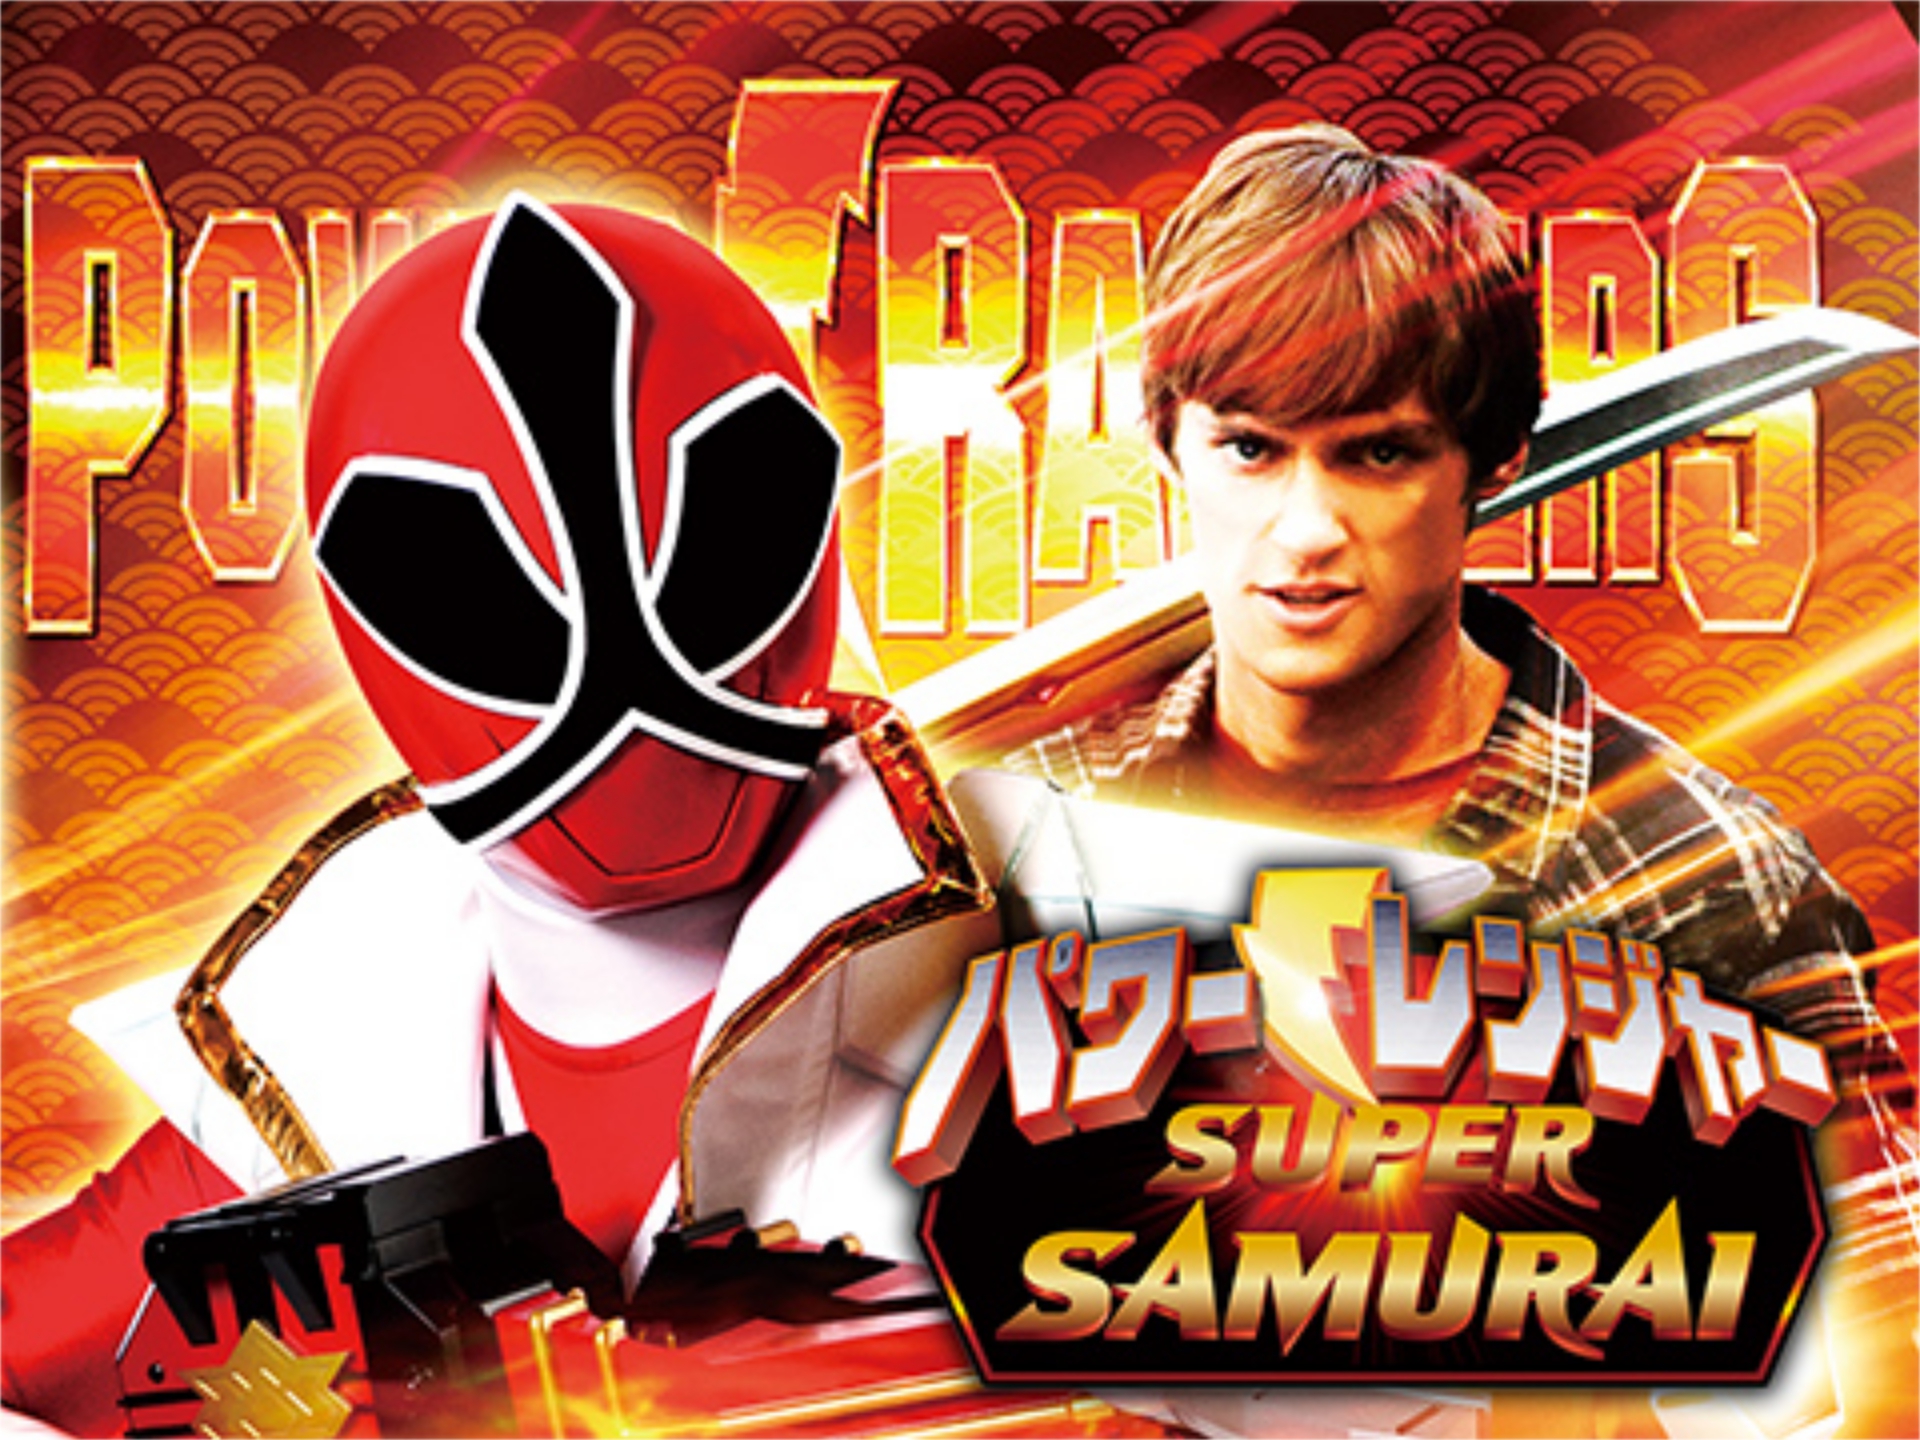 パワーレンジャー Super Samurai 第1話 第話のまとめフル動画 初月無料 動画配信サービスのビデオマーケット